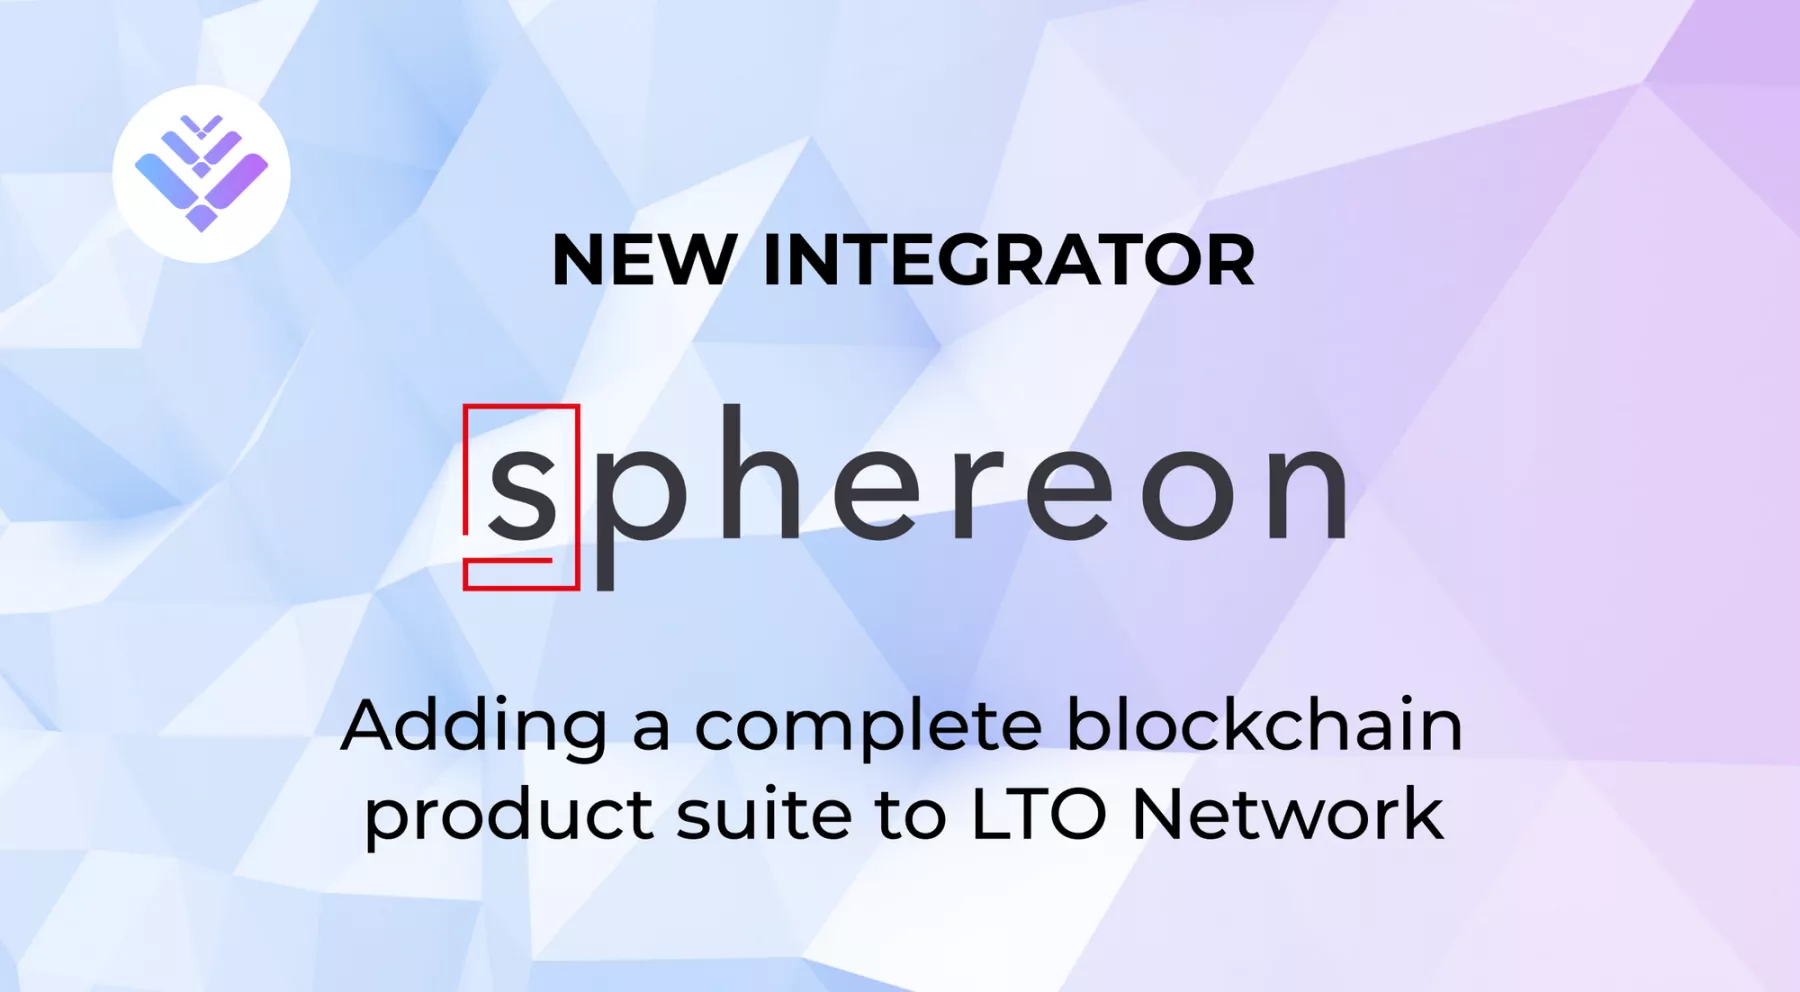 Sphereon integreert zijn productsuite met LTO Network en voegt duizenden transacties toe